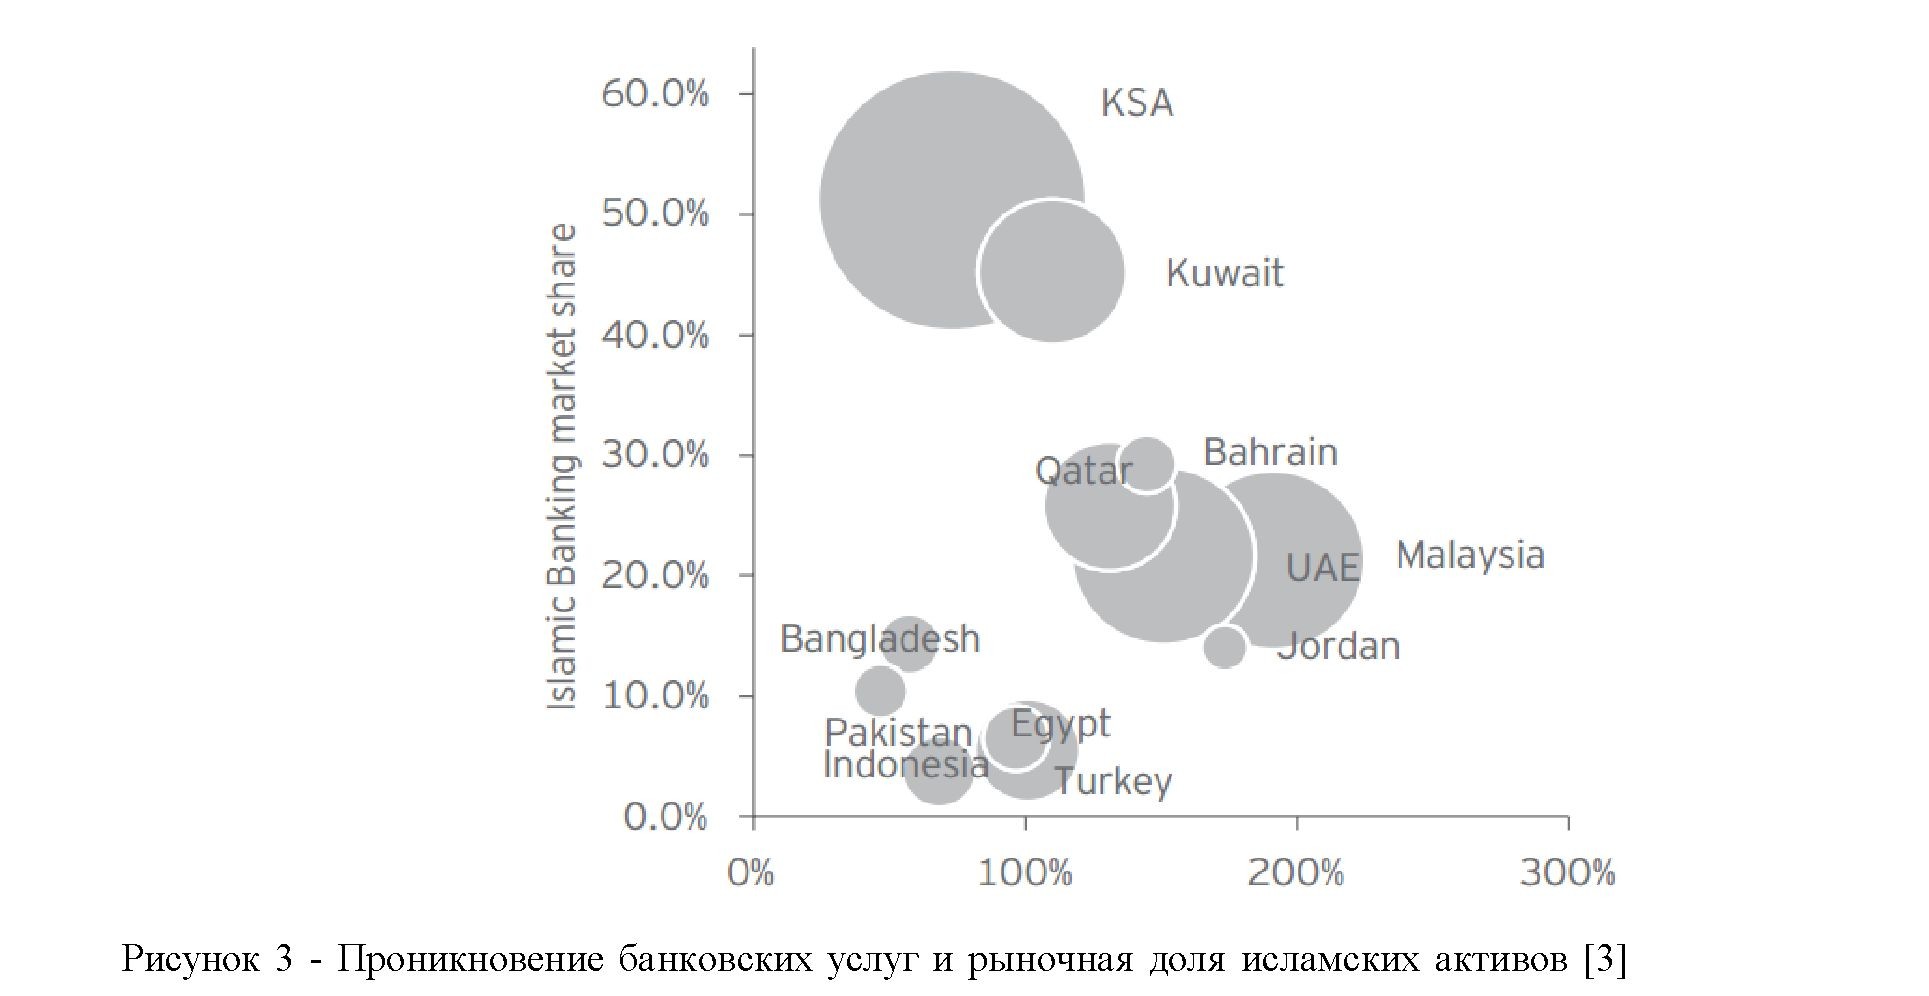 Реферат: Место и роль исламских банков в развитии экономики мусульманских стран